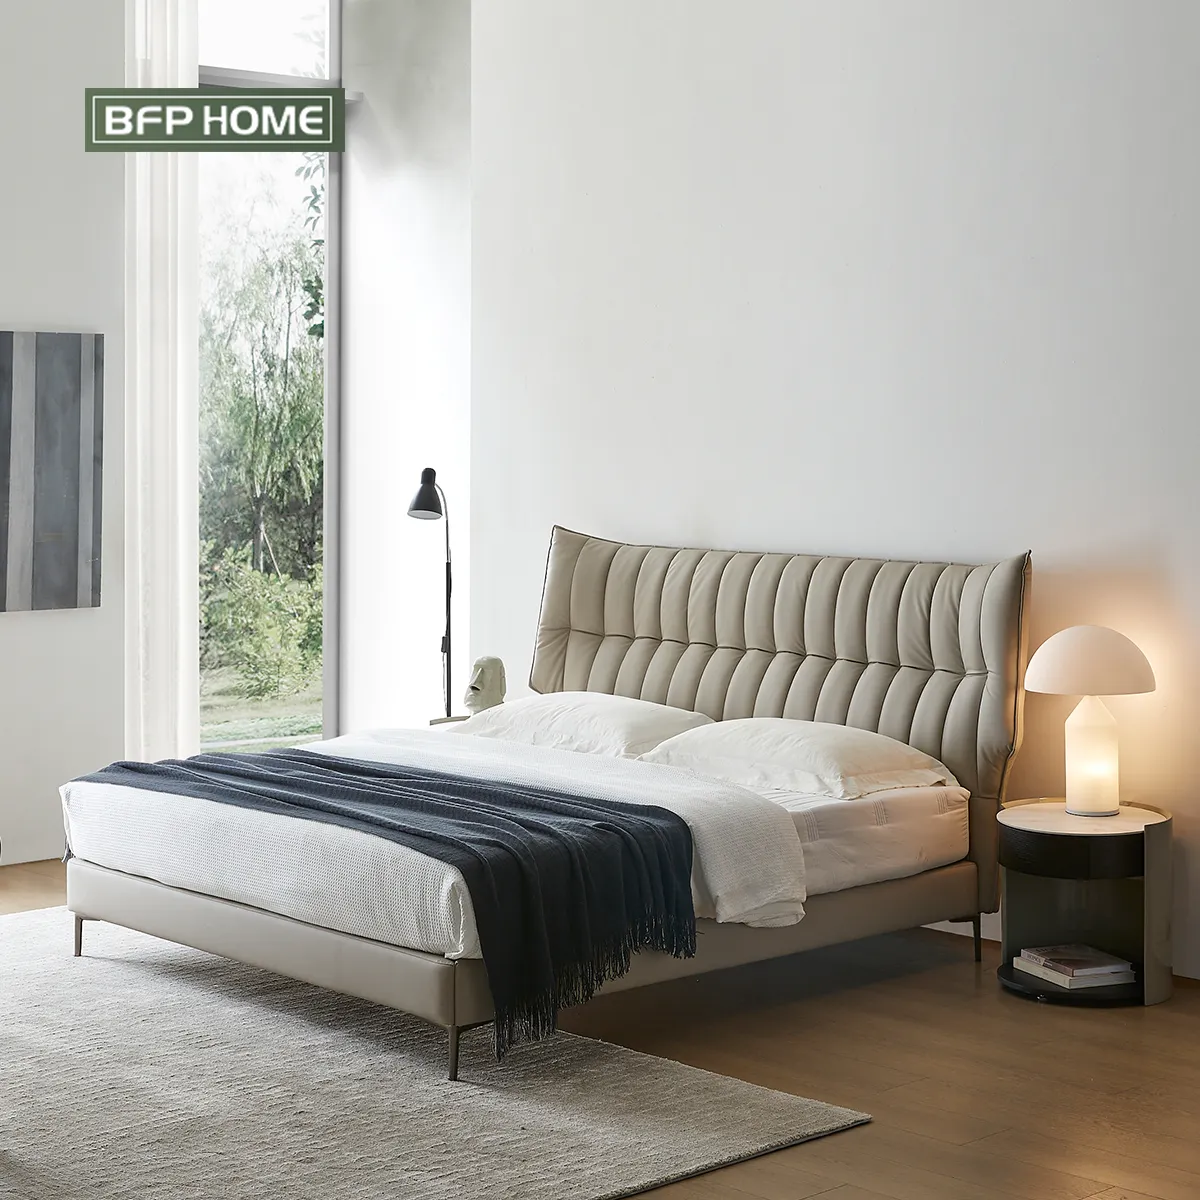 BFP घर एक बंद फर्नीचर आधुनिक शैली उच्च-गुणवत्ता और आधुनिक बिस्तर क्लासिक होटल घर ठोस लकड़ी के फ्रेम बिस्तर राजा आकार